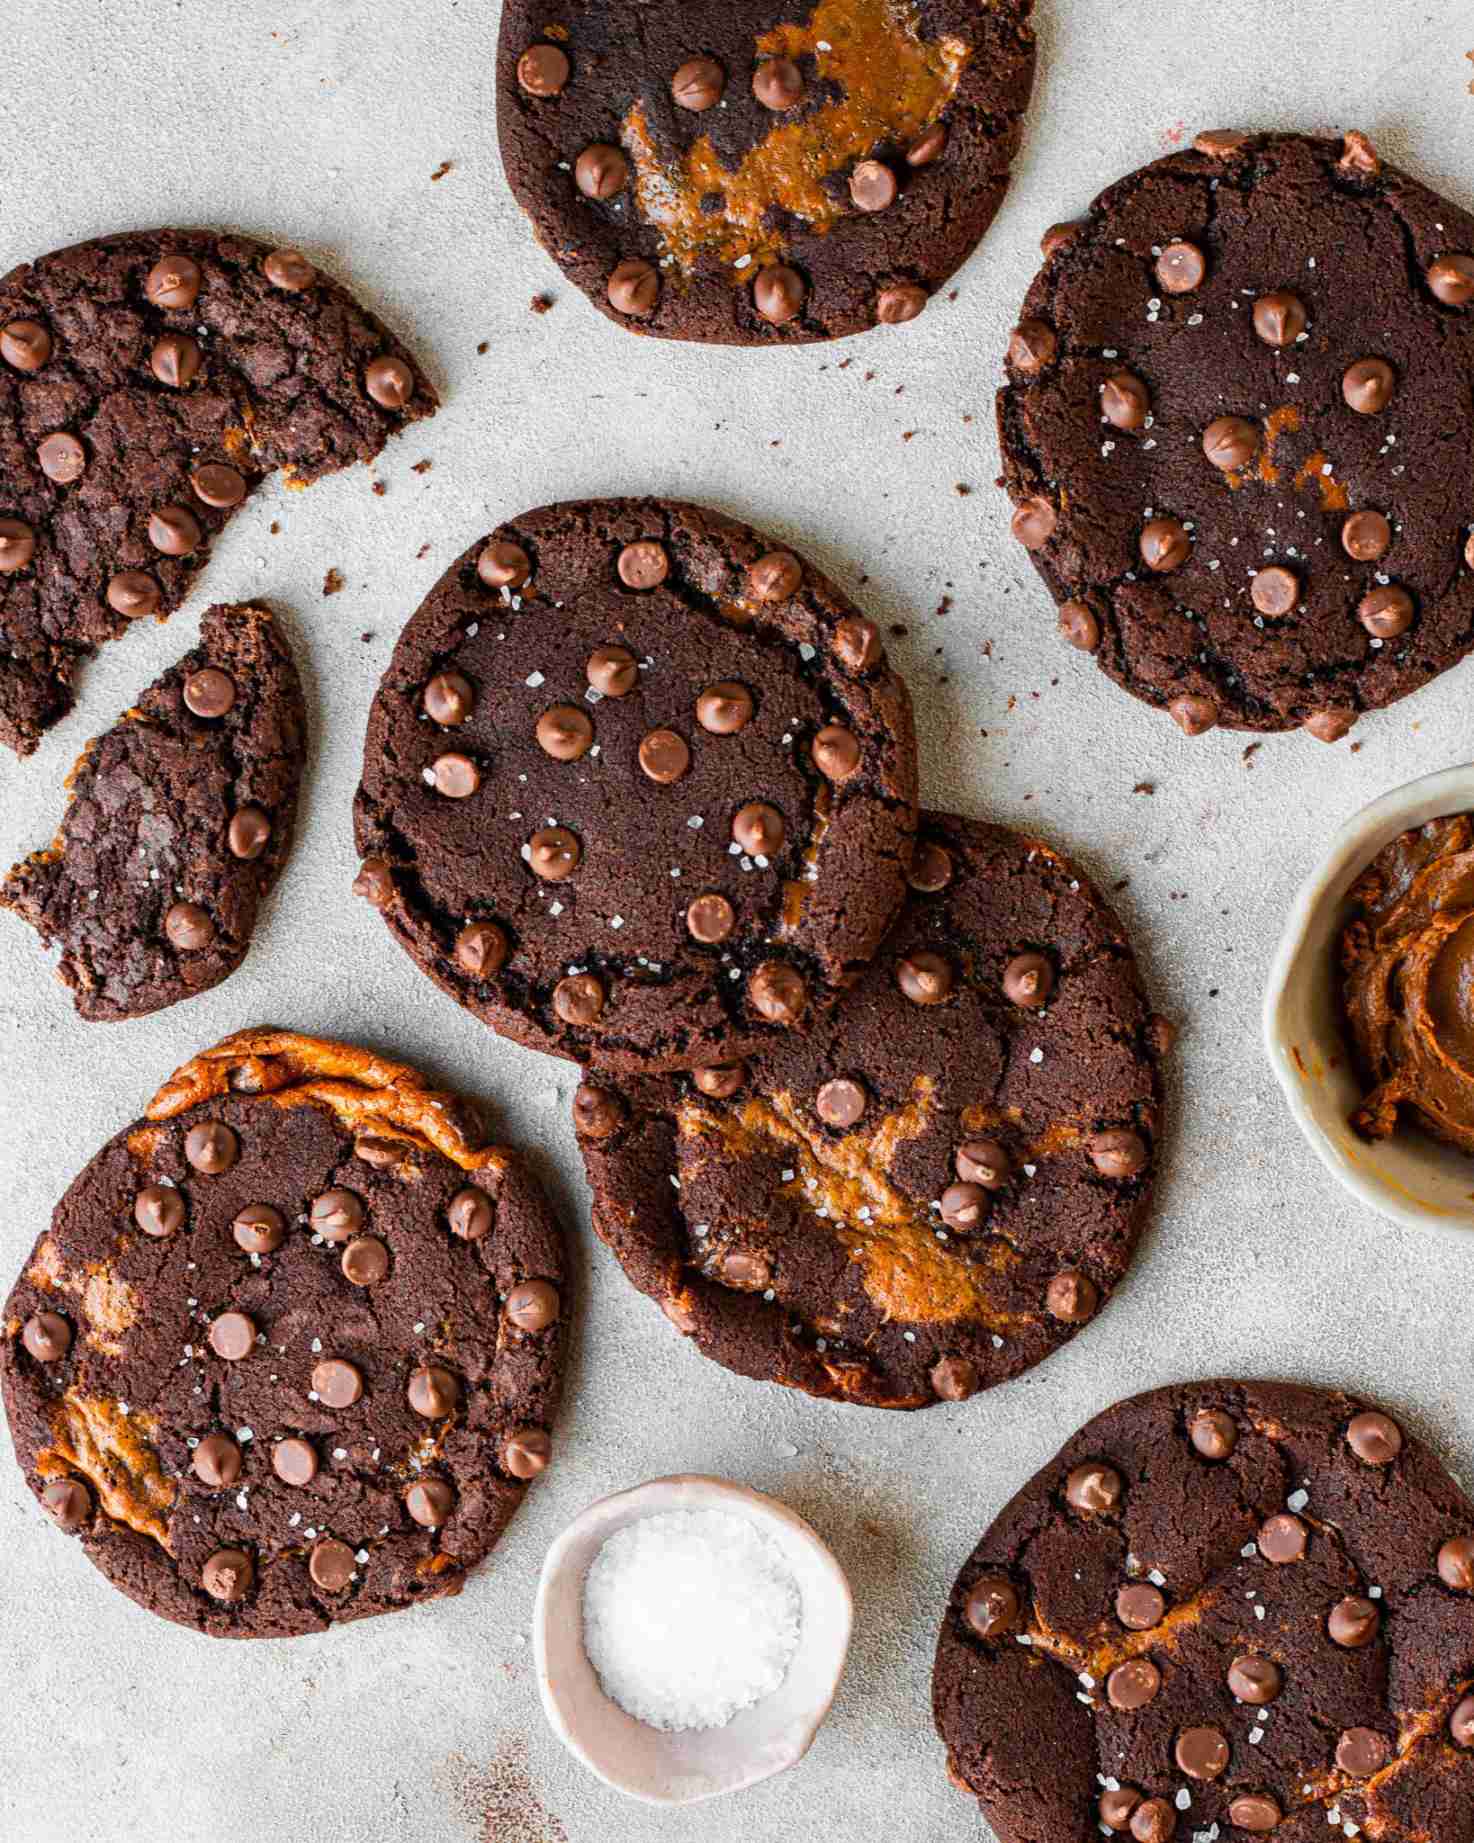 Caramel chocolate cookies